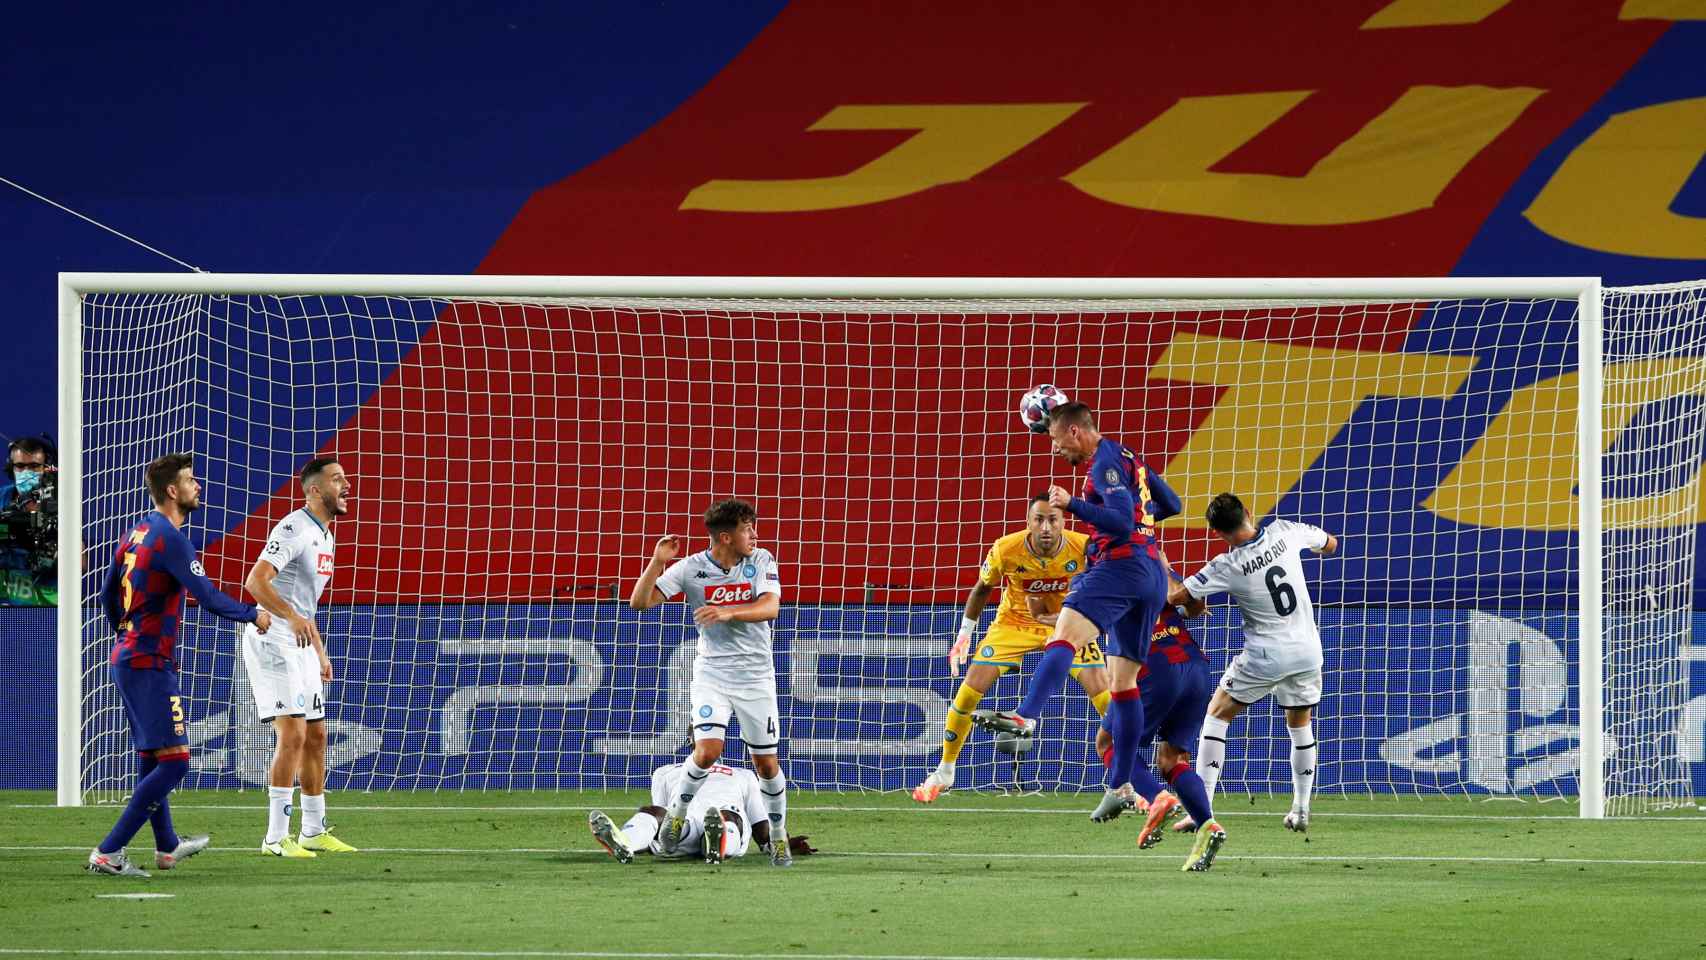 Clement Lenglet remata el balón para hacer el primer gol del Barça